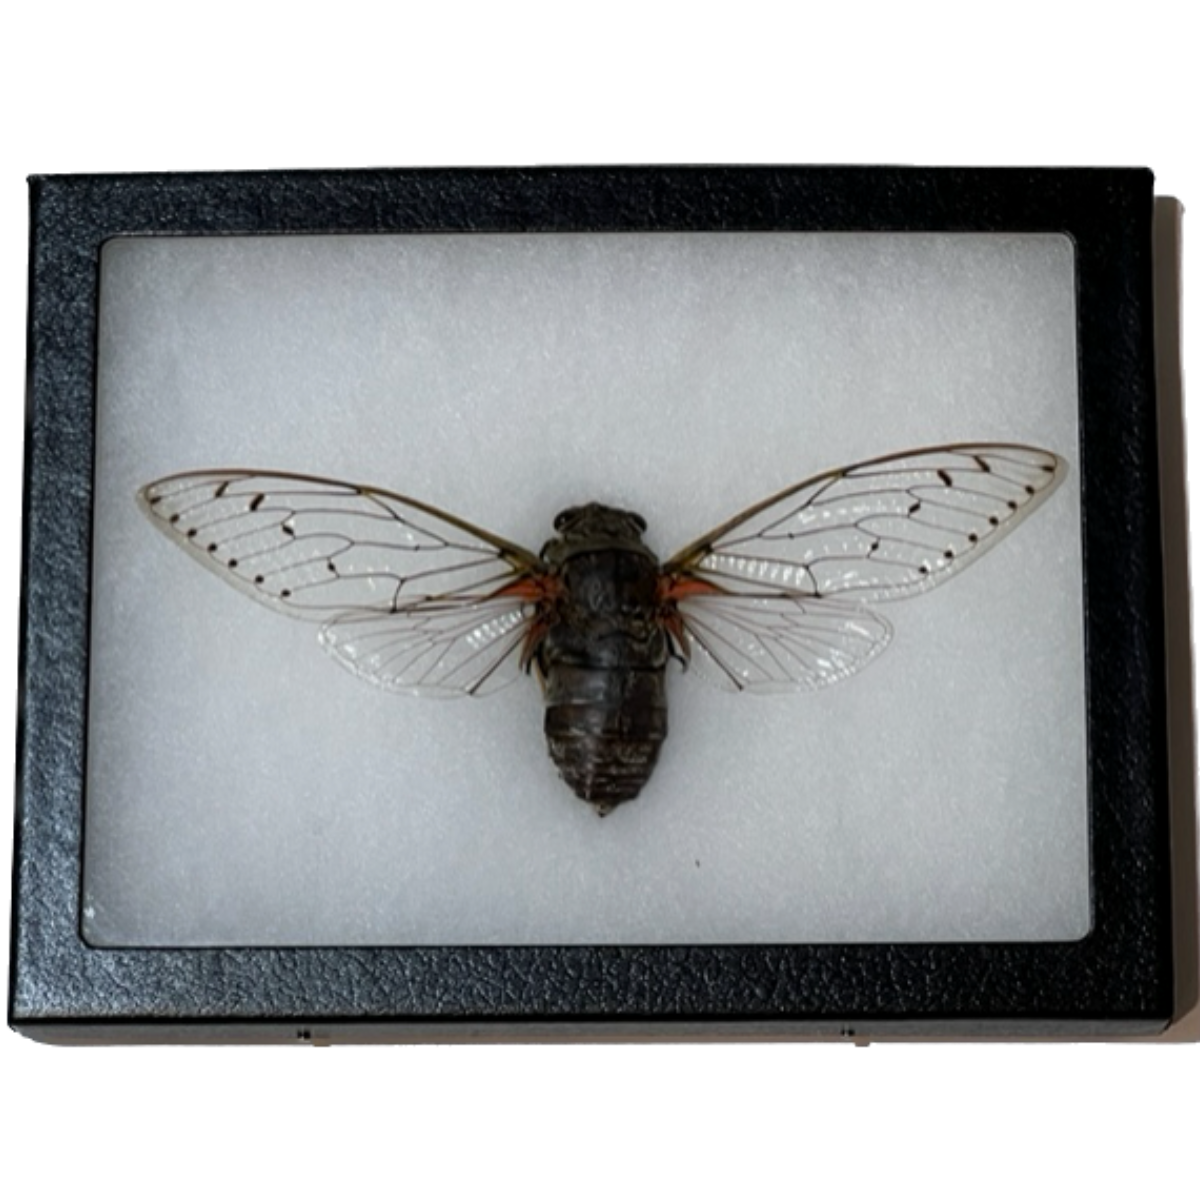 Giant Cicada In Riker Prehistoric Online